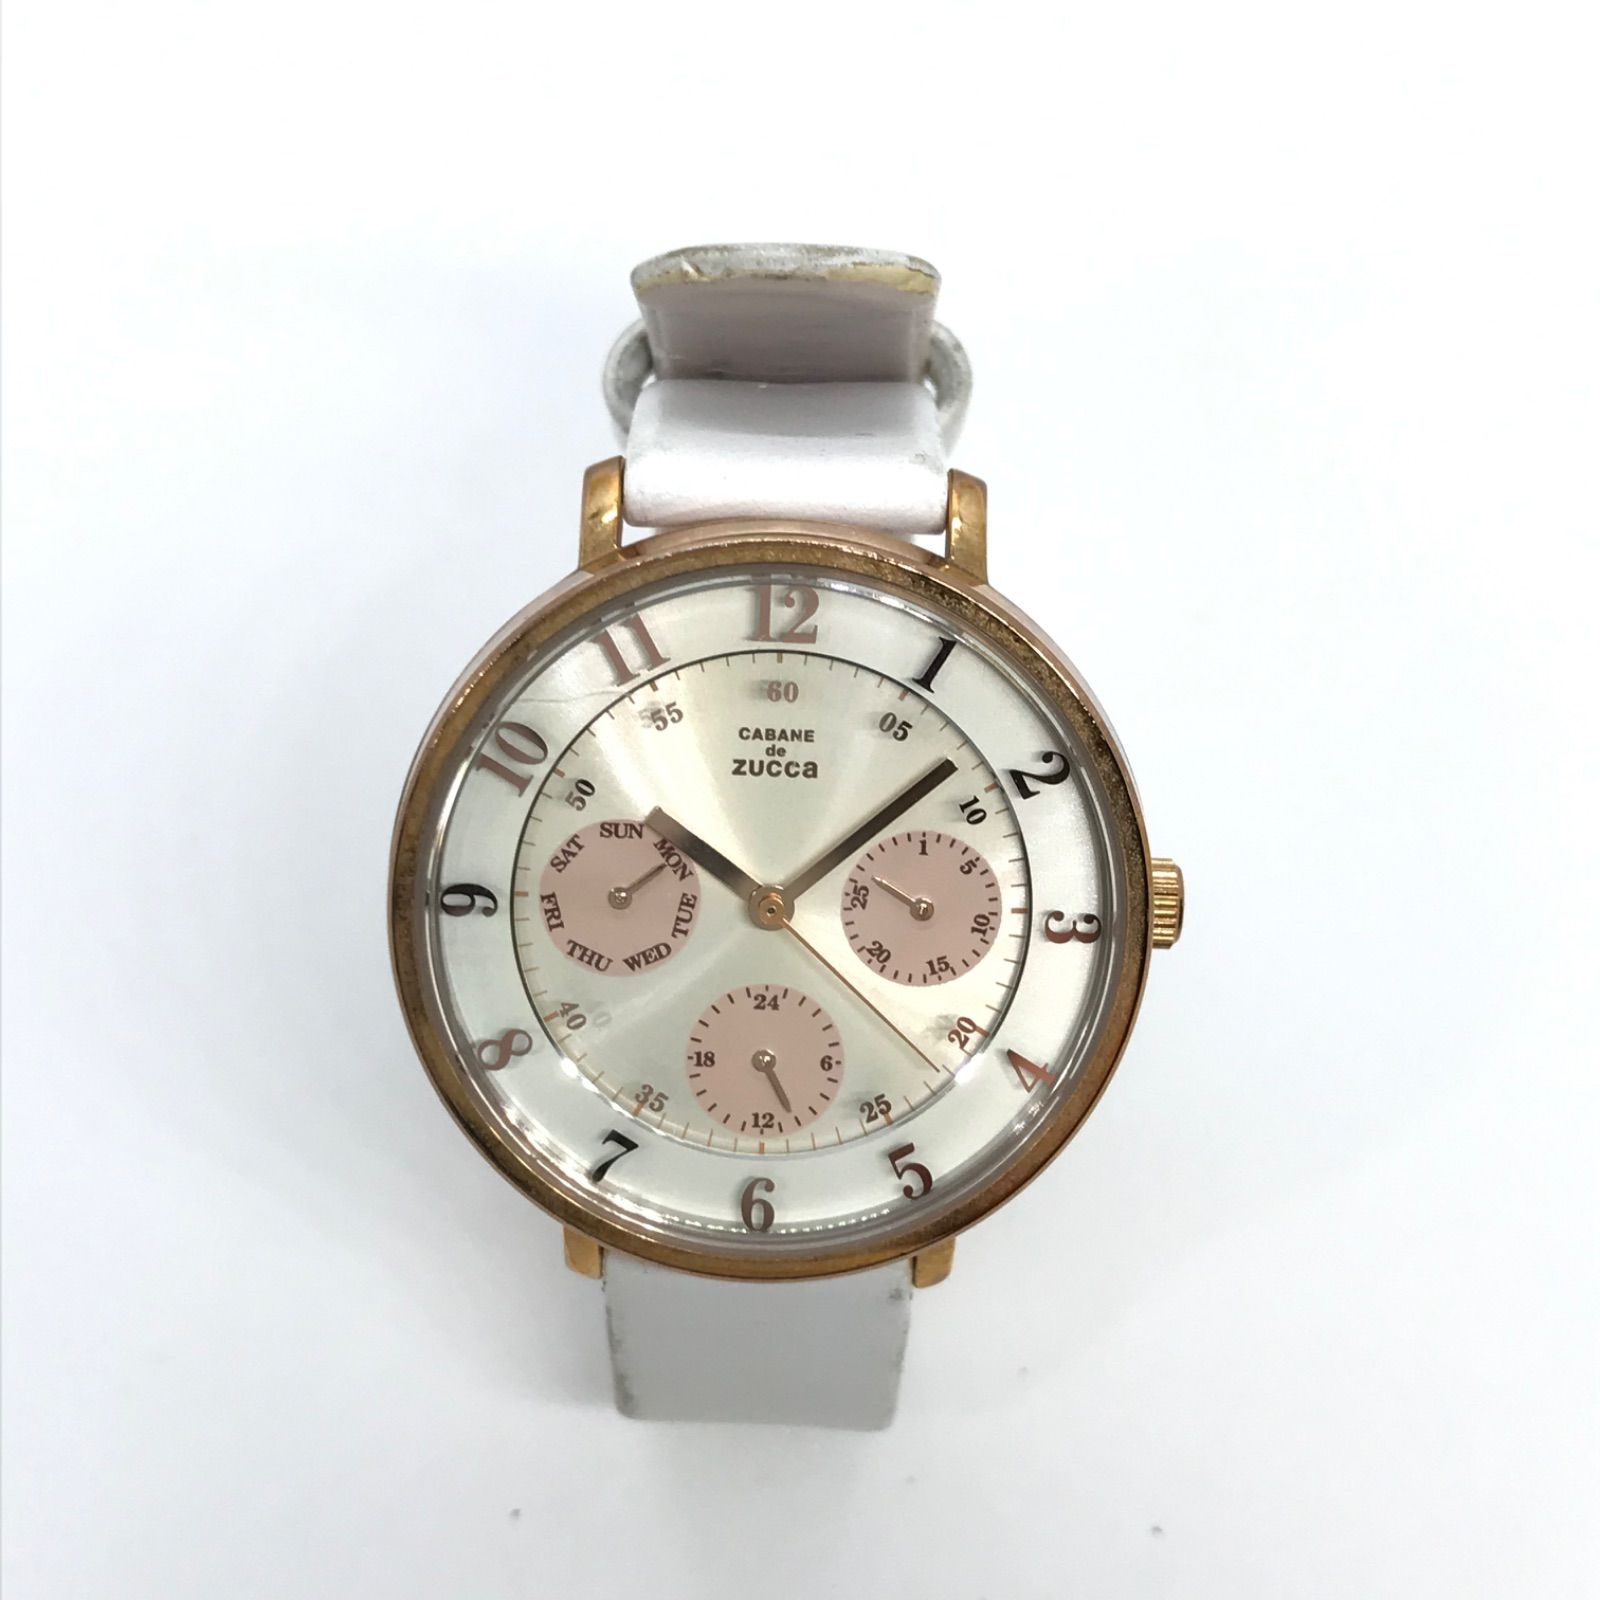 新品】CABANE de ZUCCa 8 腕時計 ゴールド 限定品 ズッカ - 腕時計(アナログ)